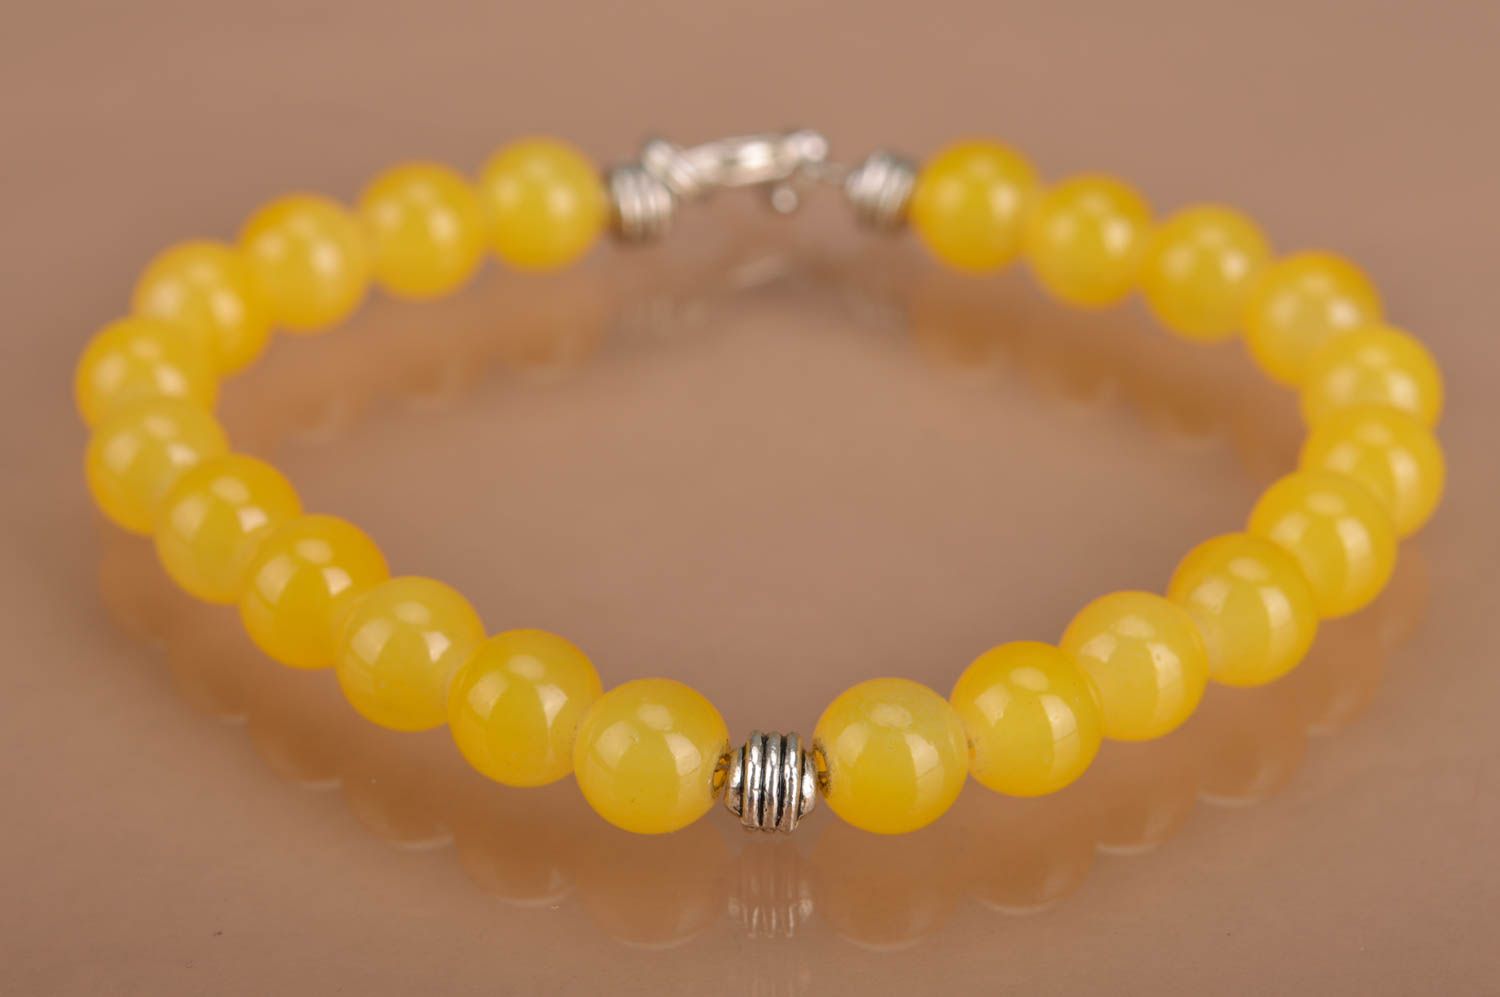 Handmade designer women's wrist bracelet with bright yellow neon beads photo 2